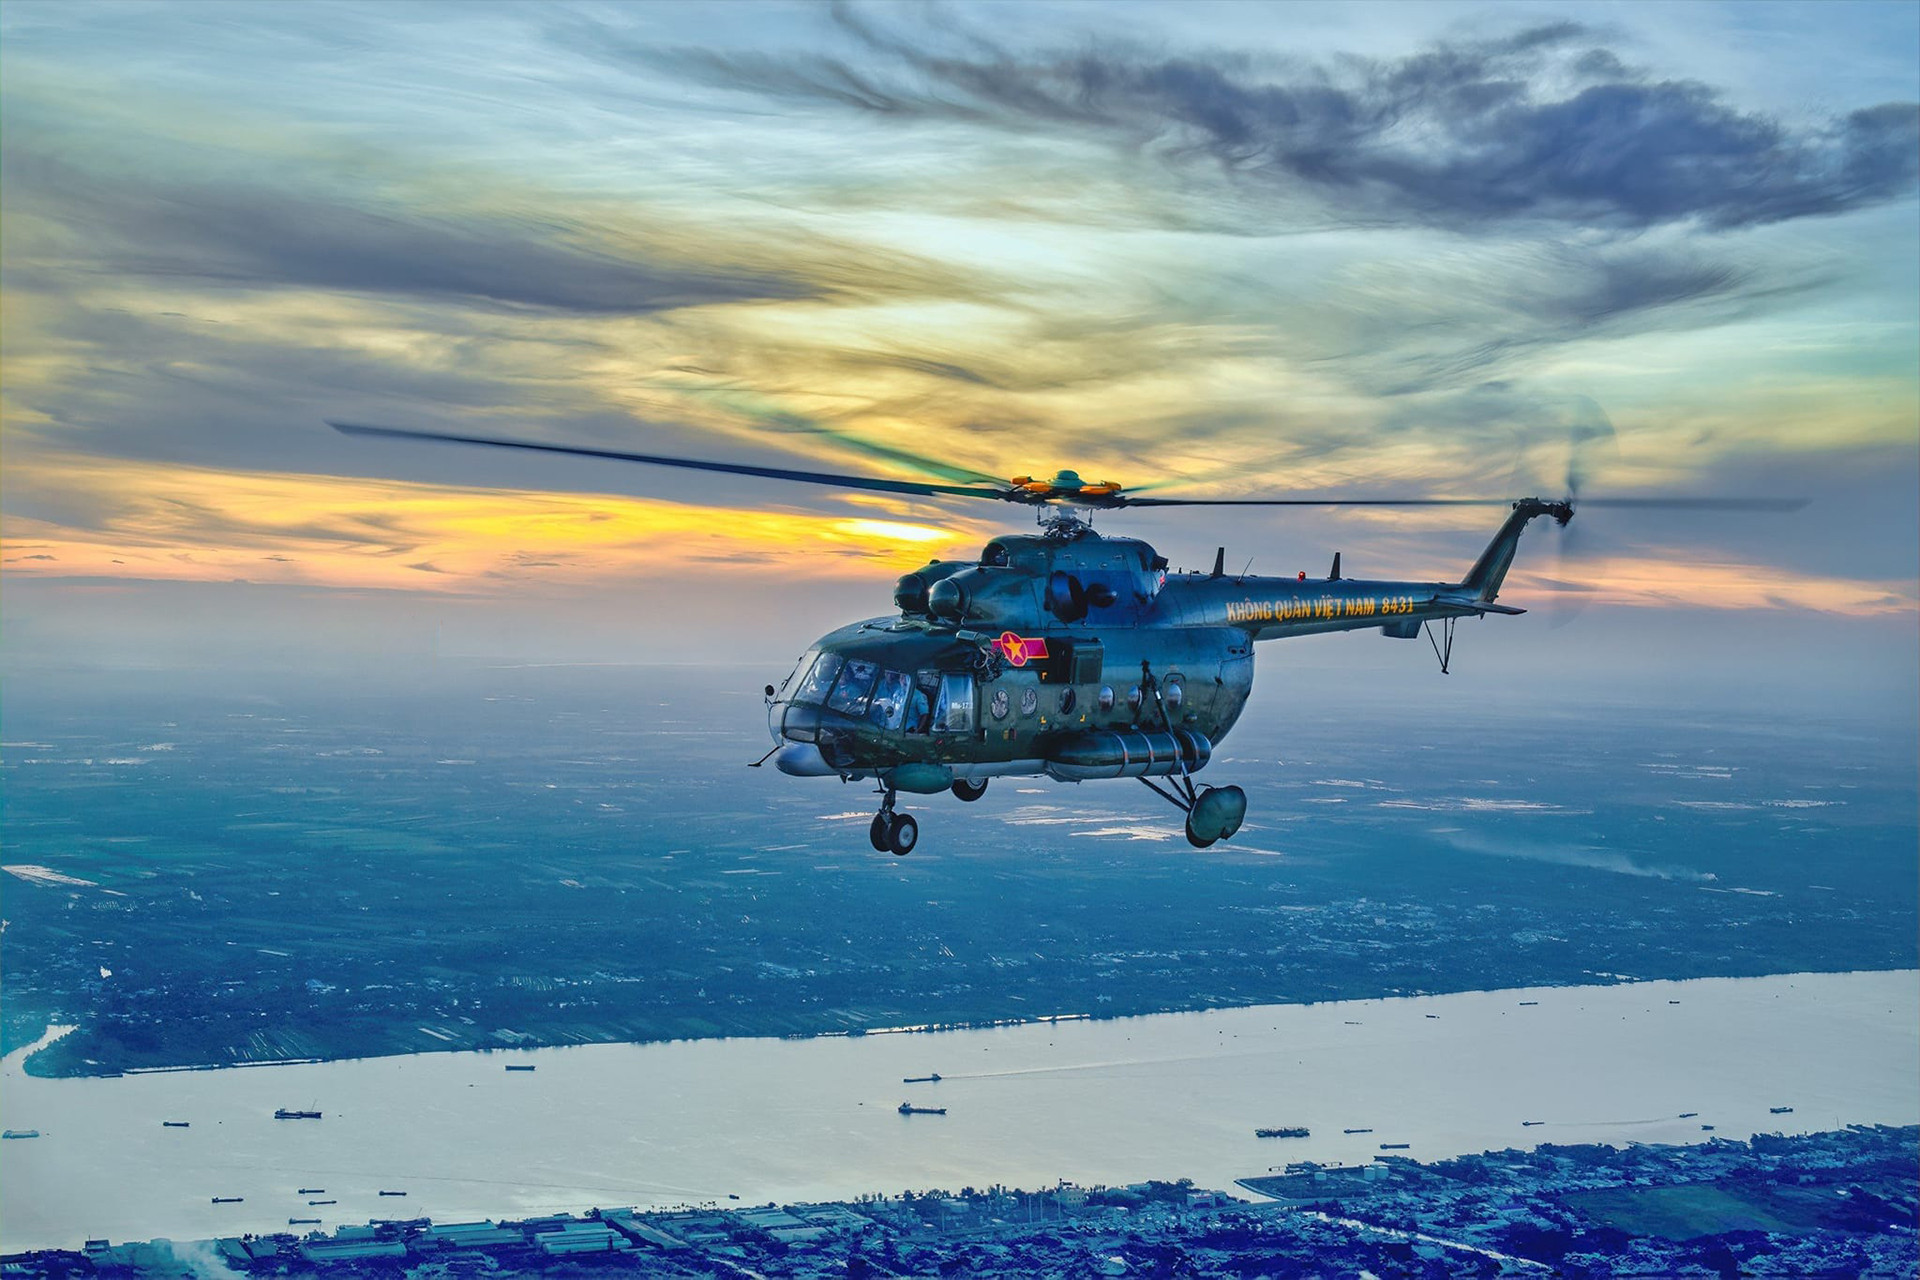 Trực thăng vận tải - chiến đấu Mi 171 do Nga nghiên cứu, chế tạo trên cơ sở máy bay Mi 17 từ những năm 1970. Dòng máy bay này đang hoạt động trong biên chế lực lượng Phòng không - Không quân Việt Nam với vai trò tìm kiếm cứu nạn